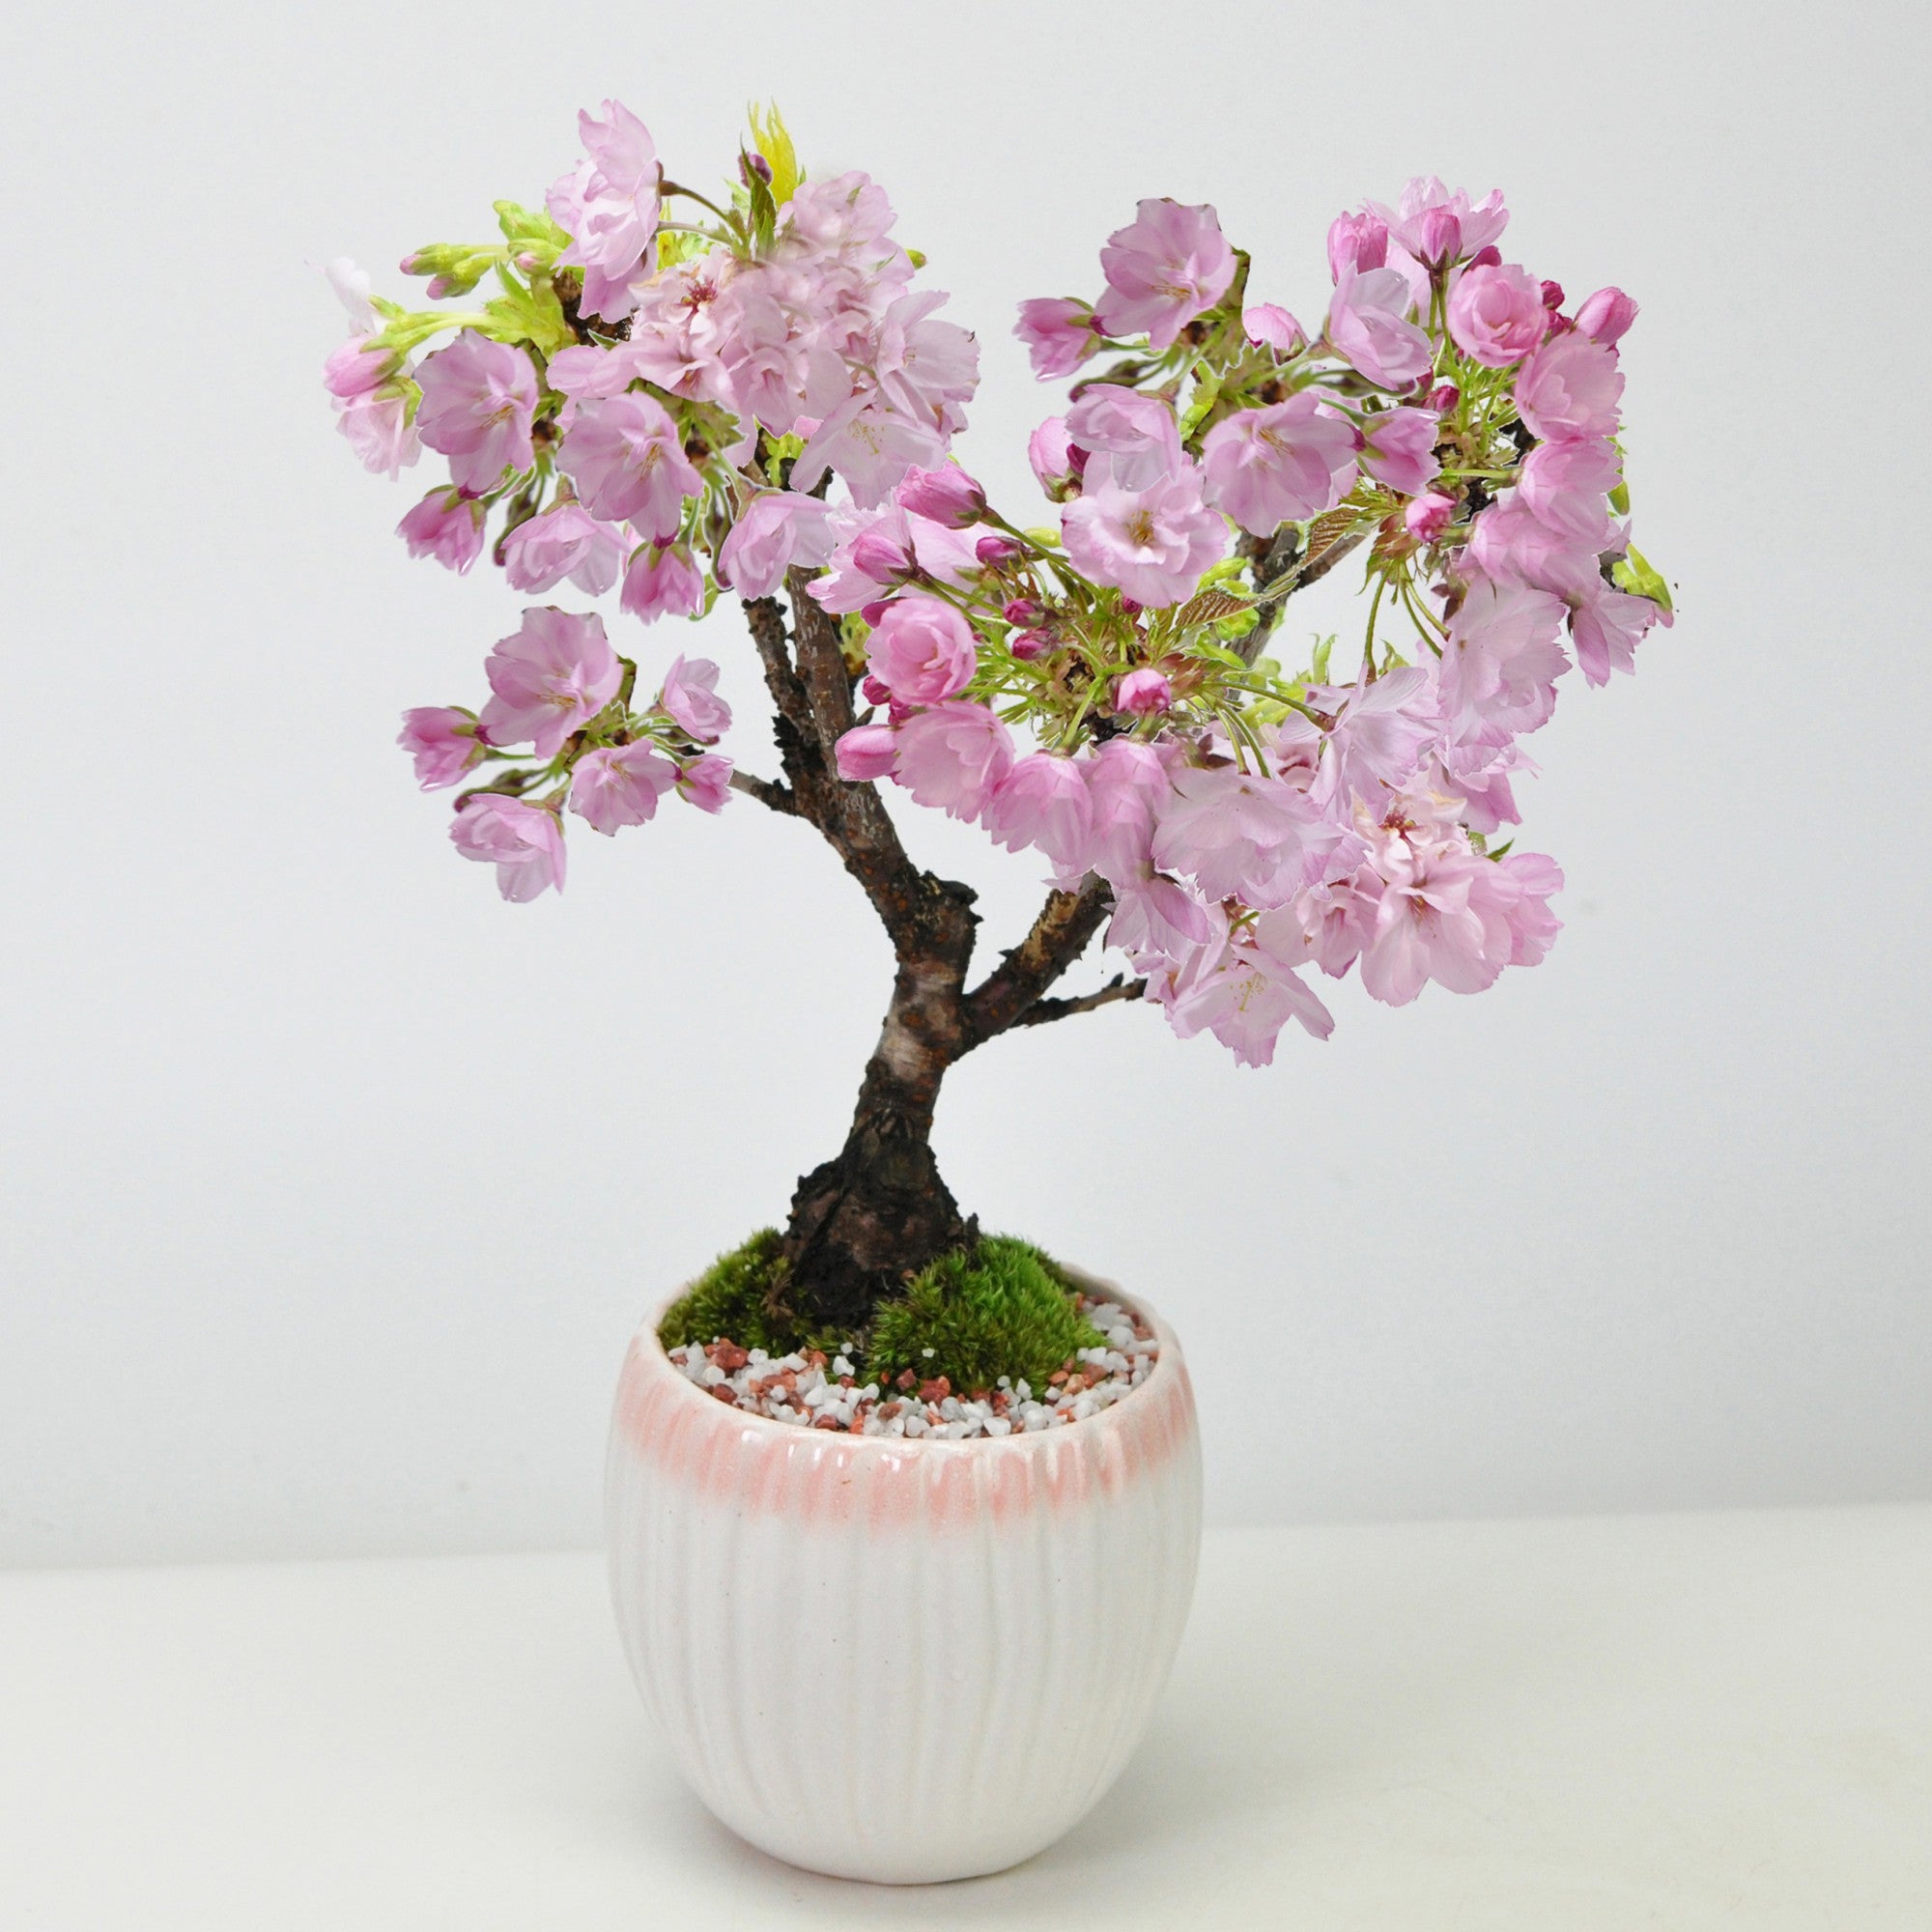 【母の日】開花調整 5月に咲く桜 白桃モダン鉢